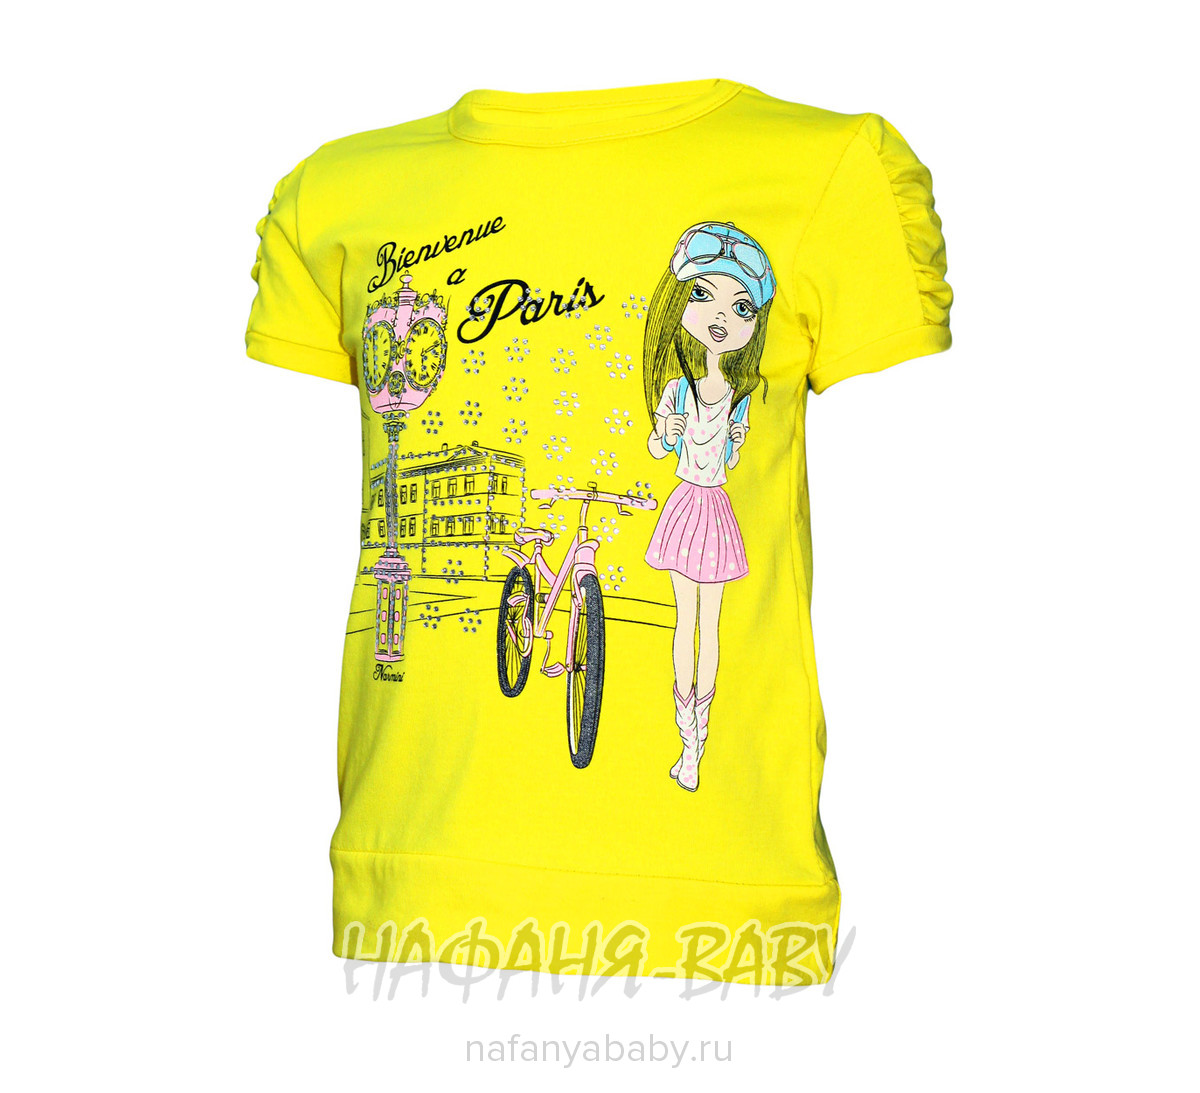 Детская футболка NARMINI, купить в интернет магазине Нафаня. арт: 3715.